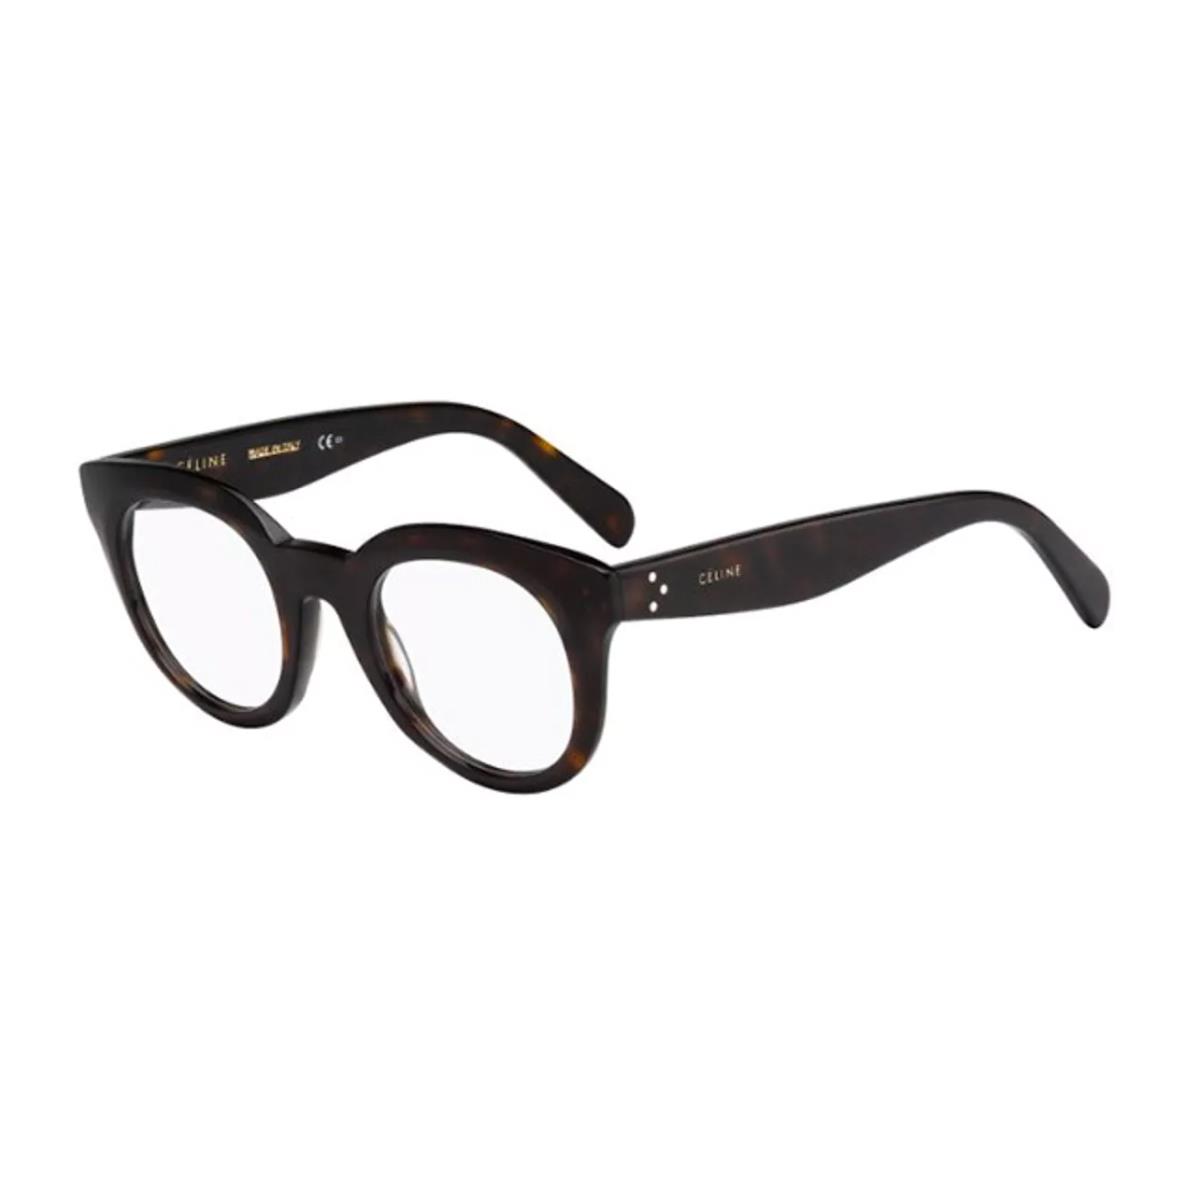 Celine Eyeglasses CL41363 86 Havana Clara Full Rim Frames Rx-able 47MM